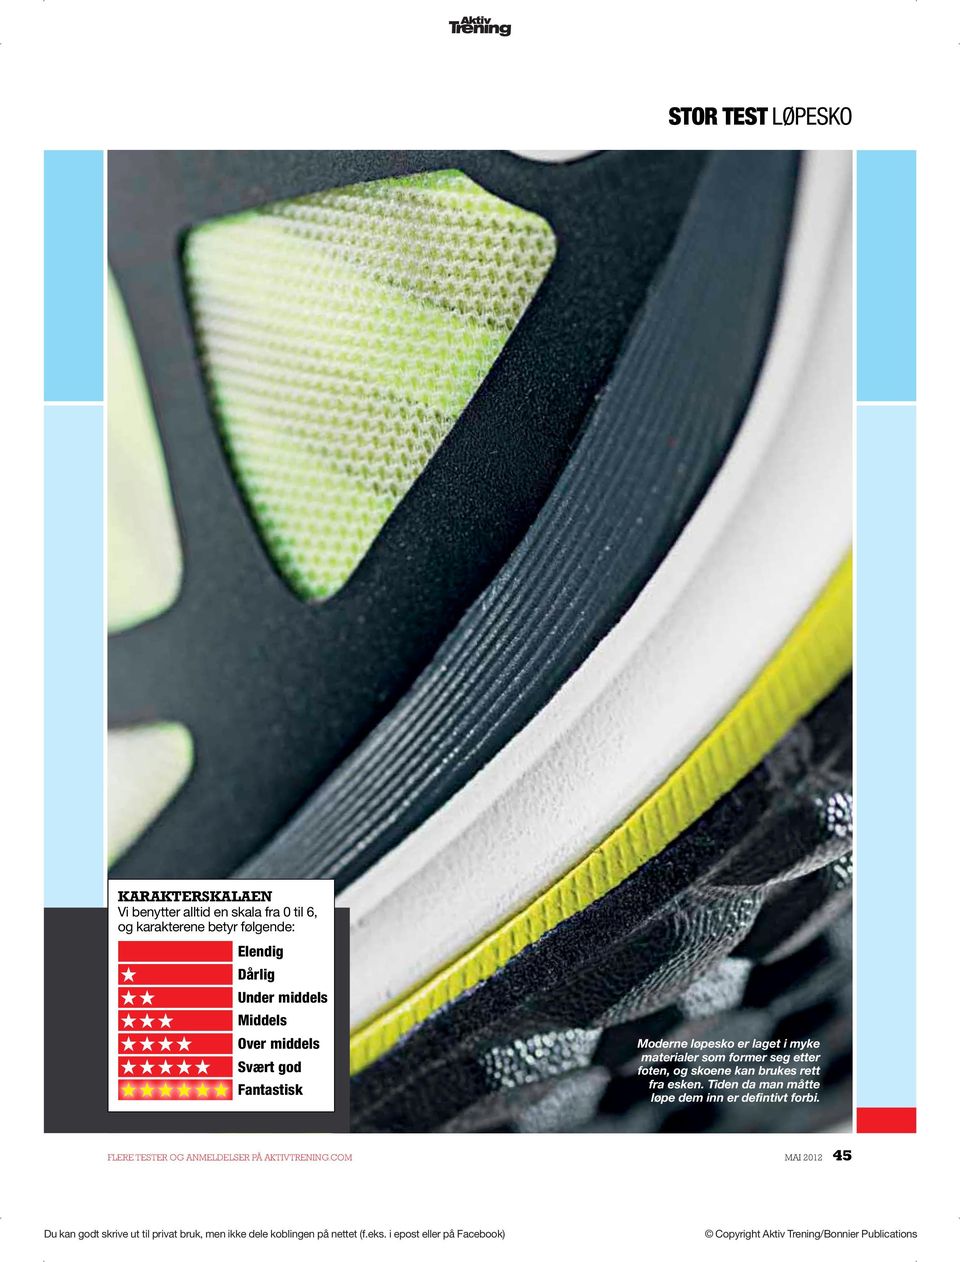 Moderne løpesko er laget i myke materialer som former seg etter foten, og skoene kan brukes rett